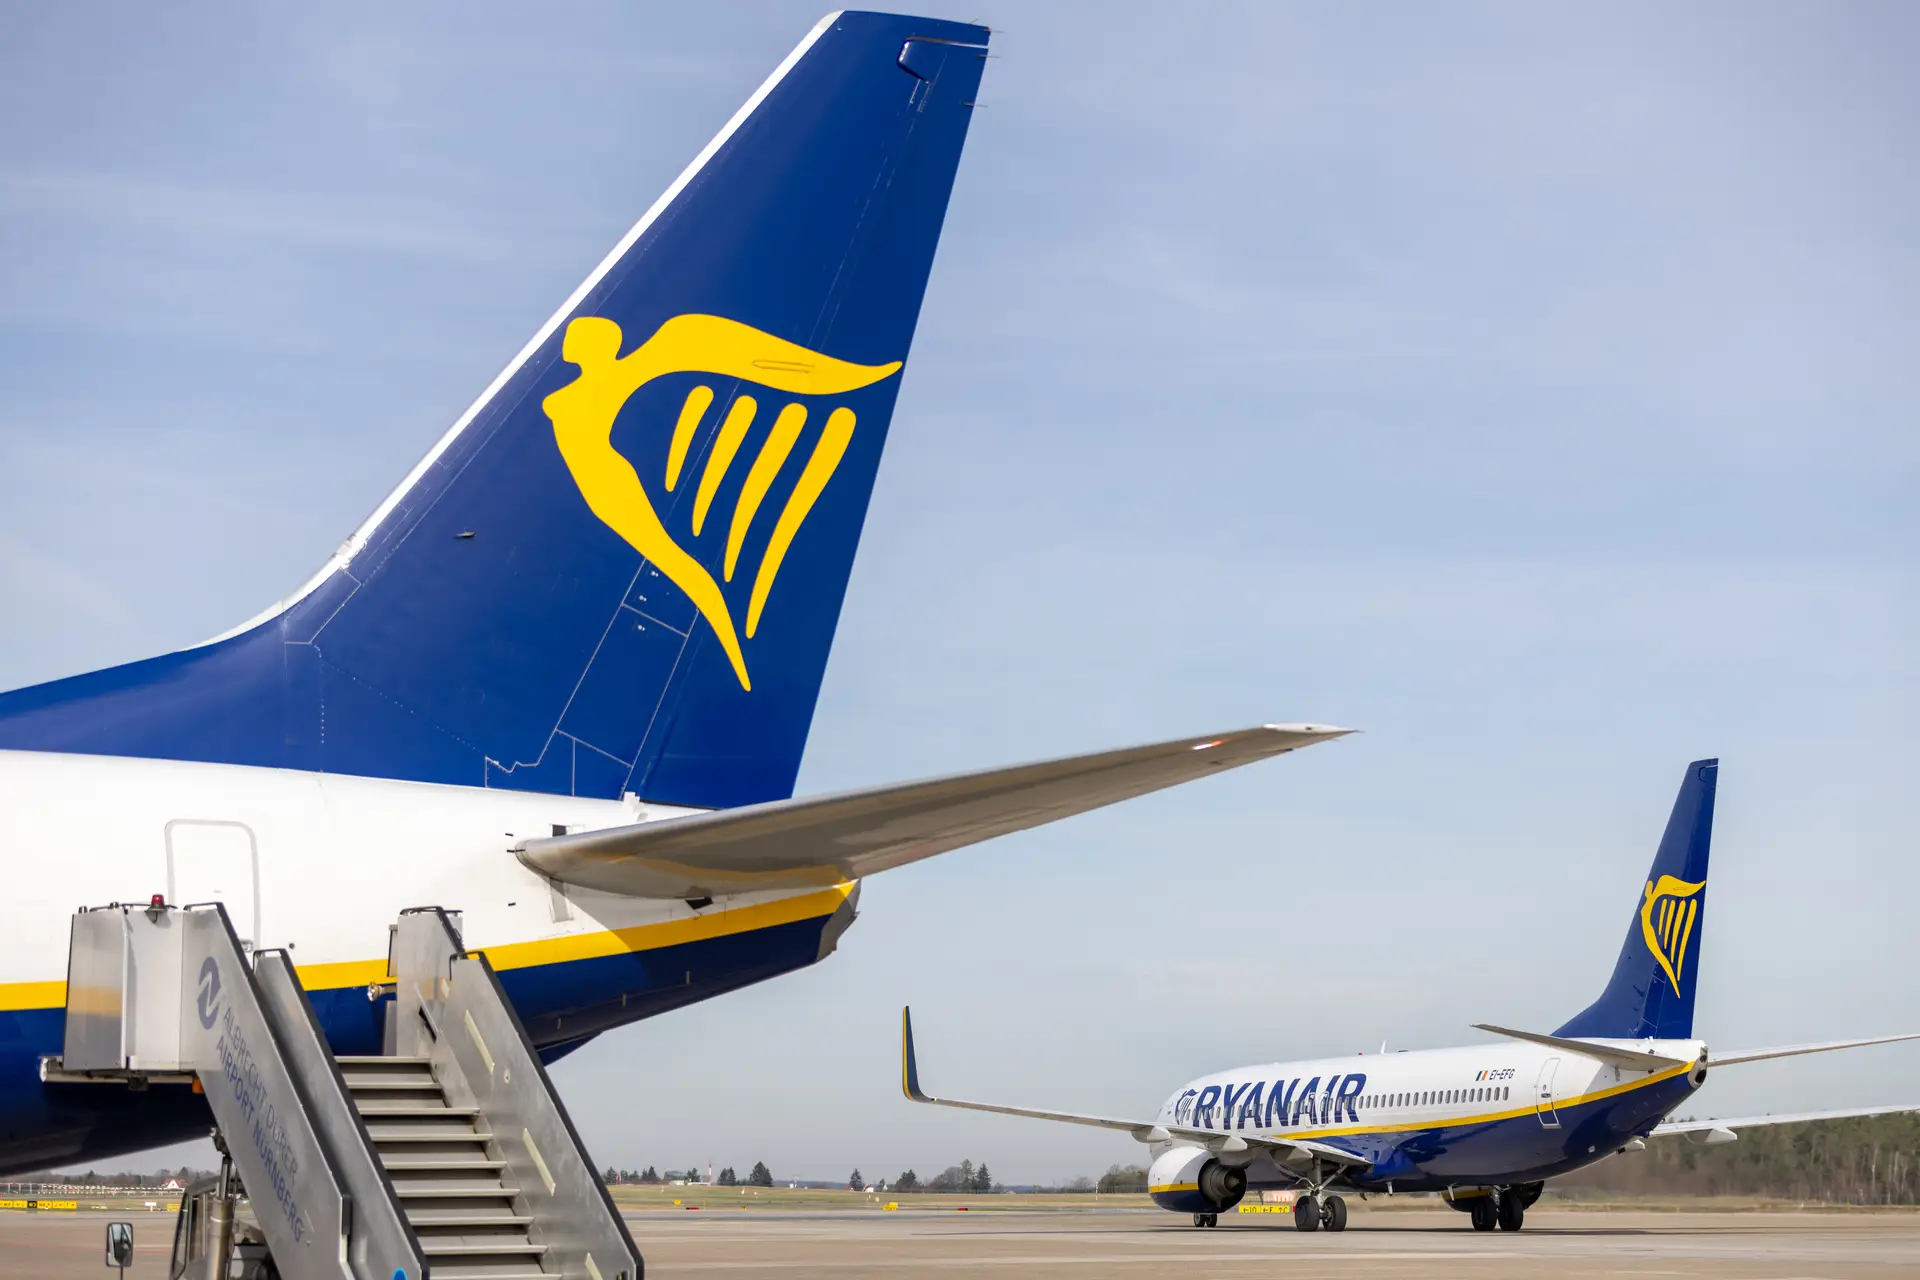 "Maior programação de sempre para o verão": Ryanair abre novas rotas em Portugal